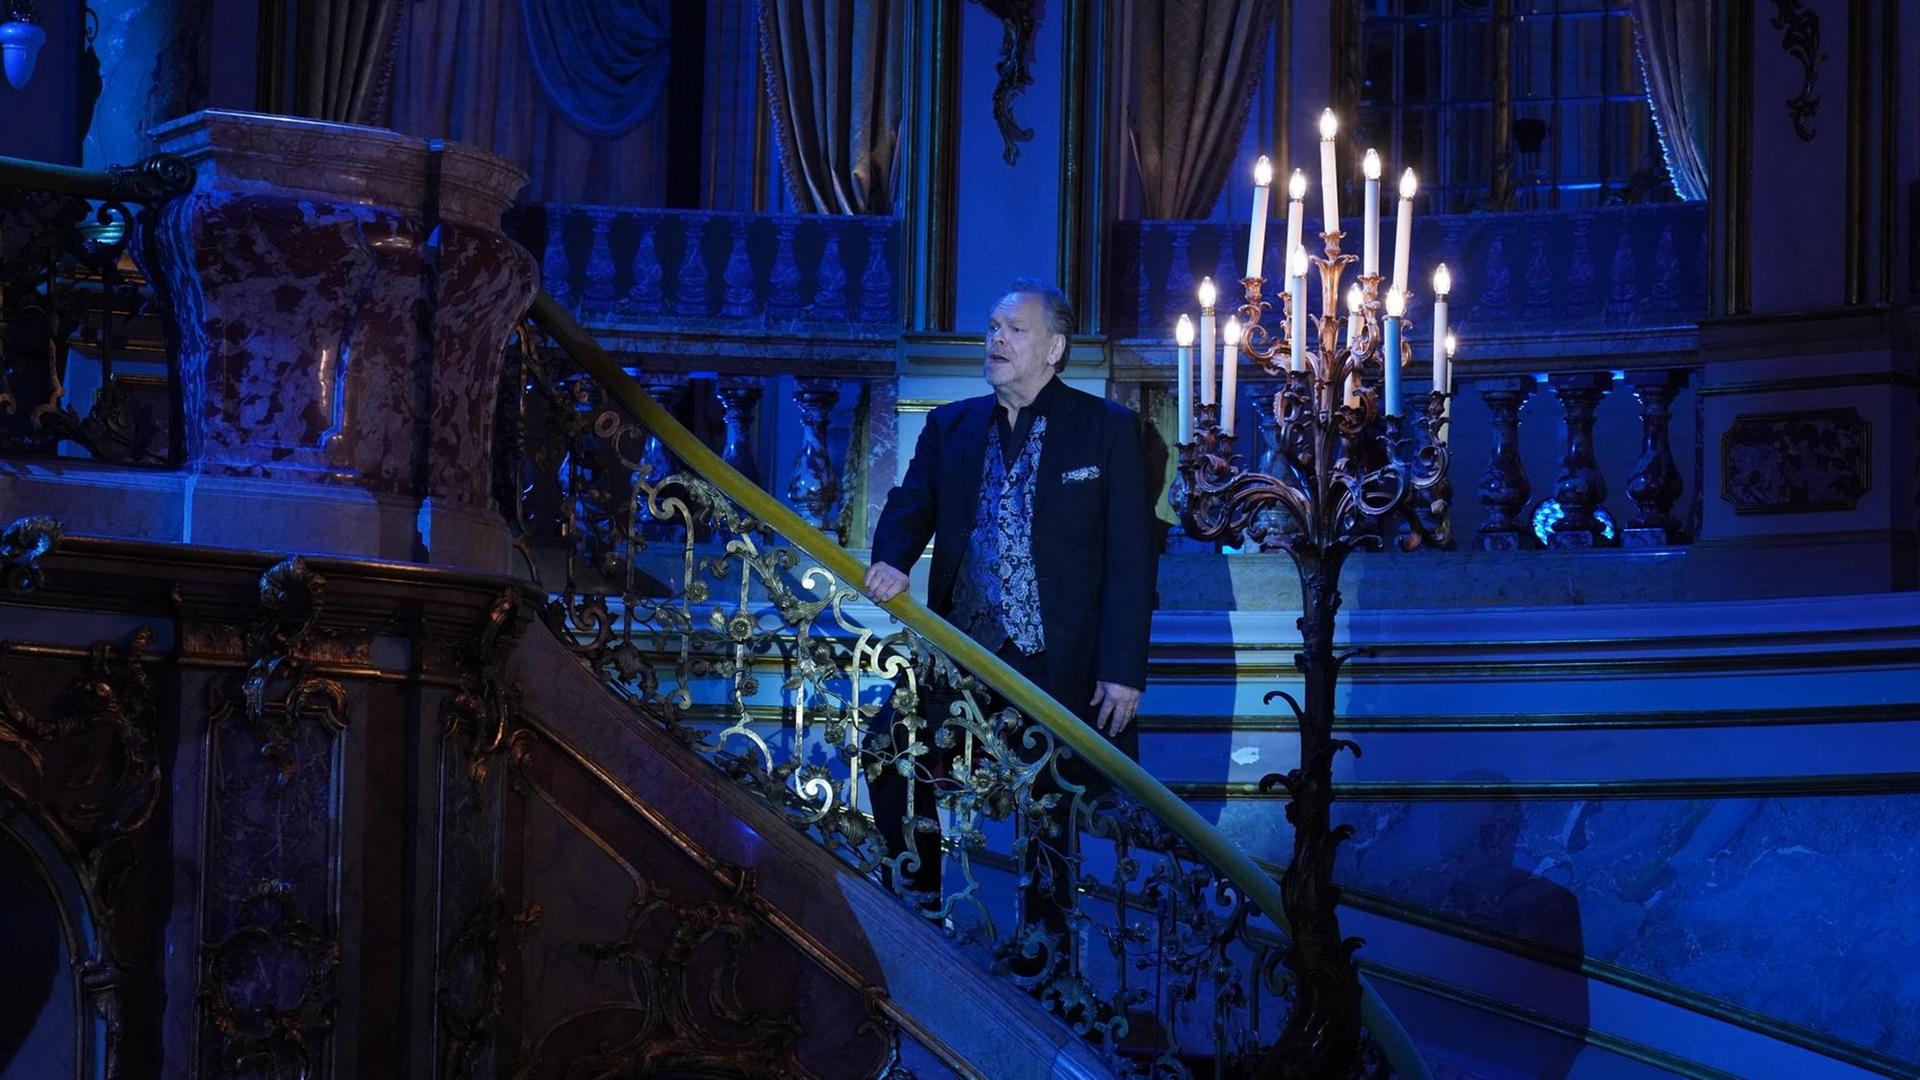 Ein Sänger steht auf einer barocken Treppe, direkt neben ihm ein Kronleuchter mit brennenden Kerzen. Alles ist in bläuliches Licht getaucht.